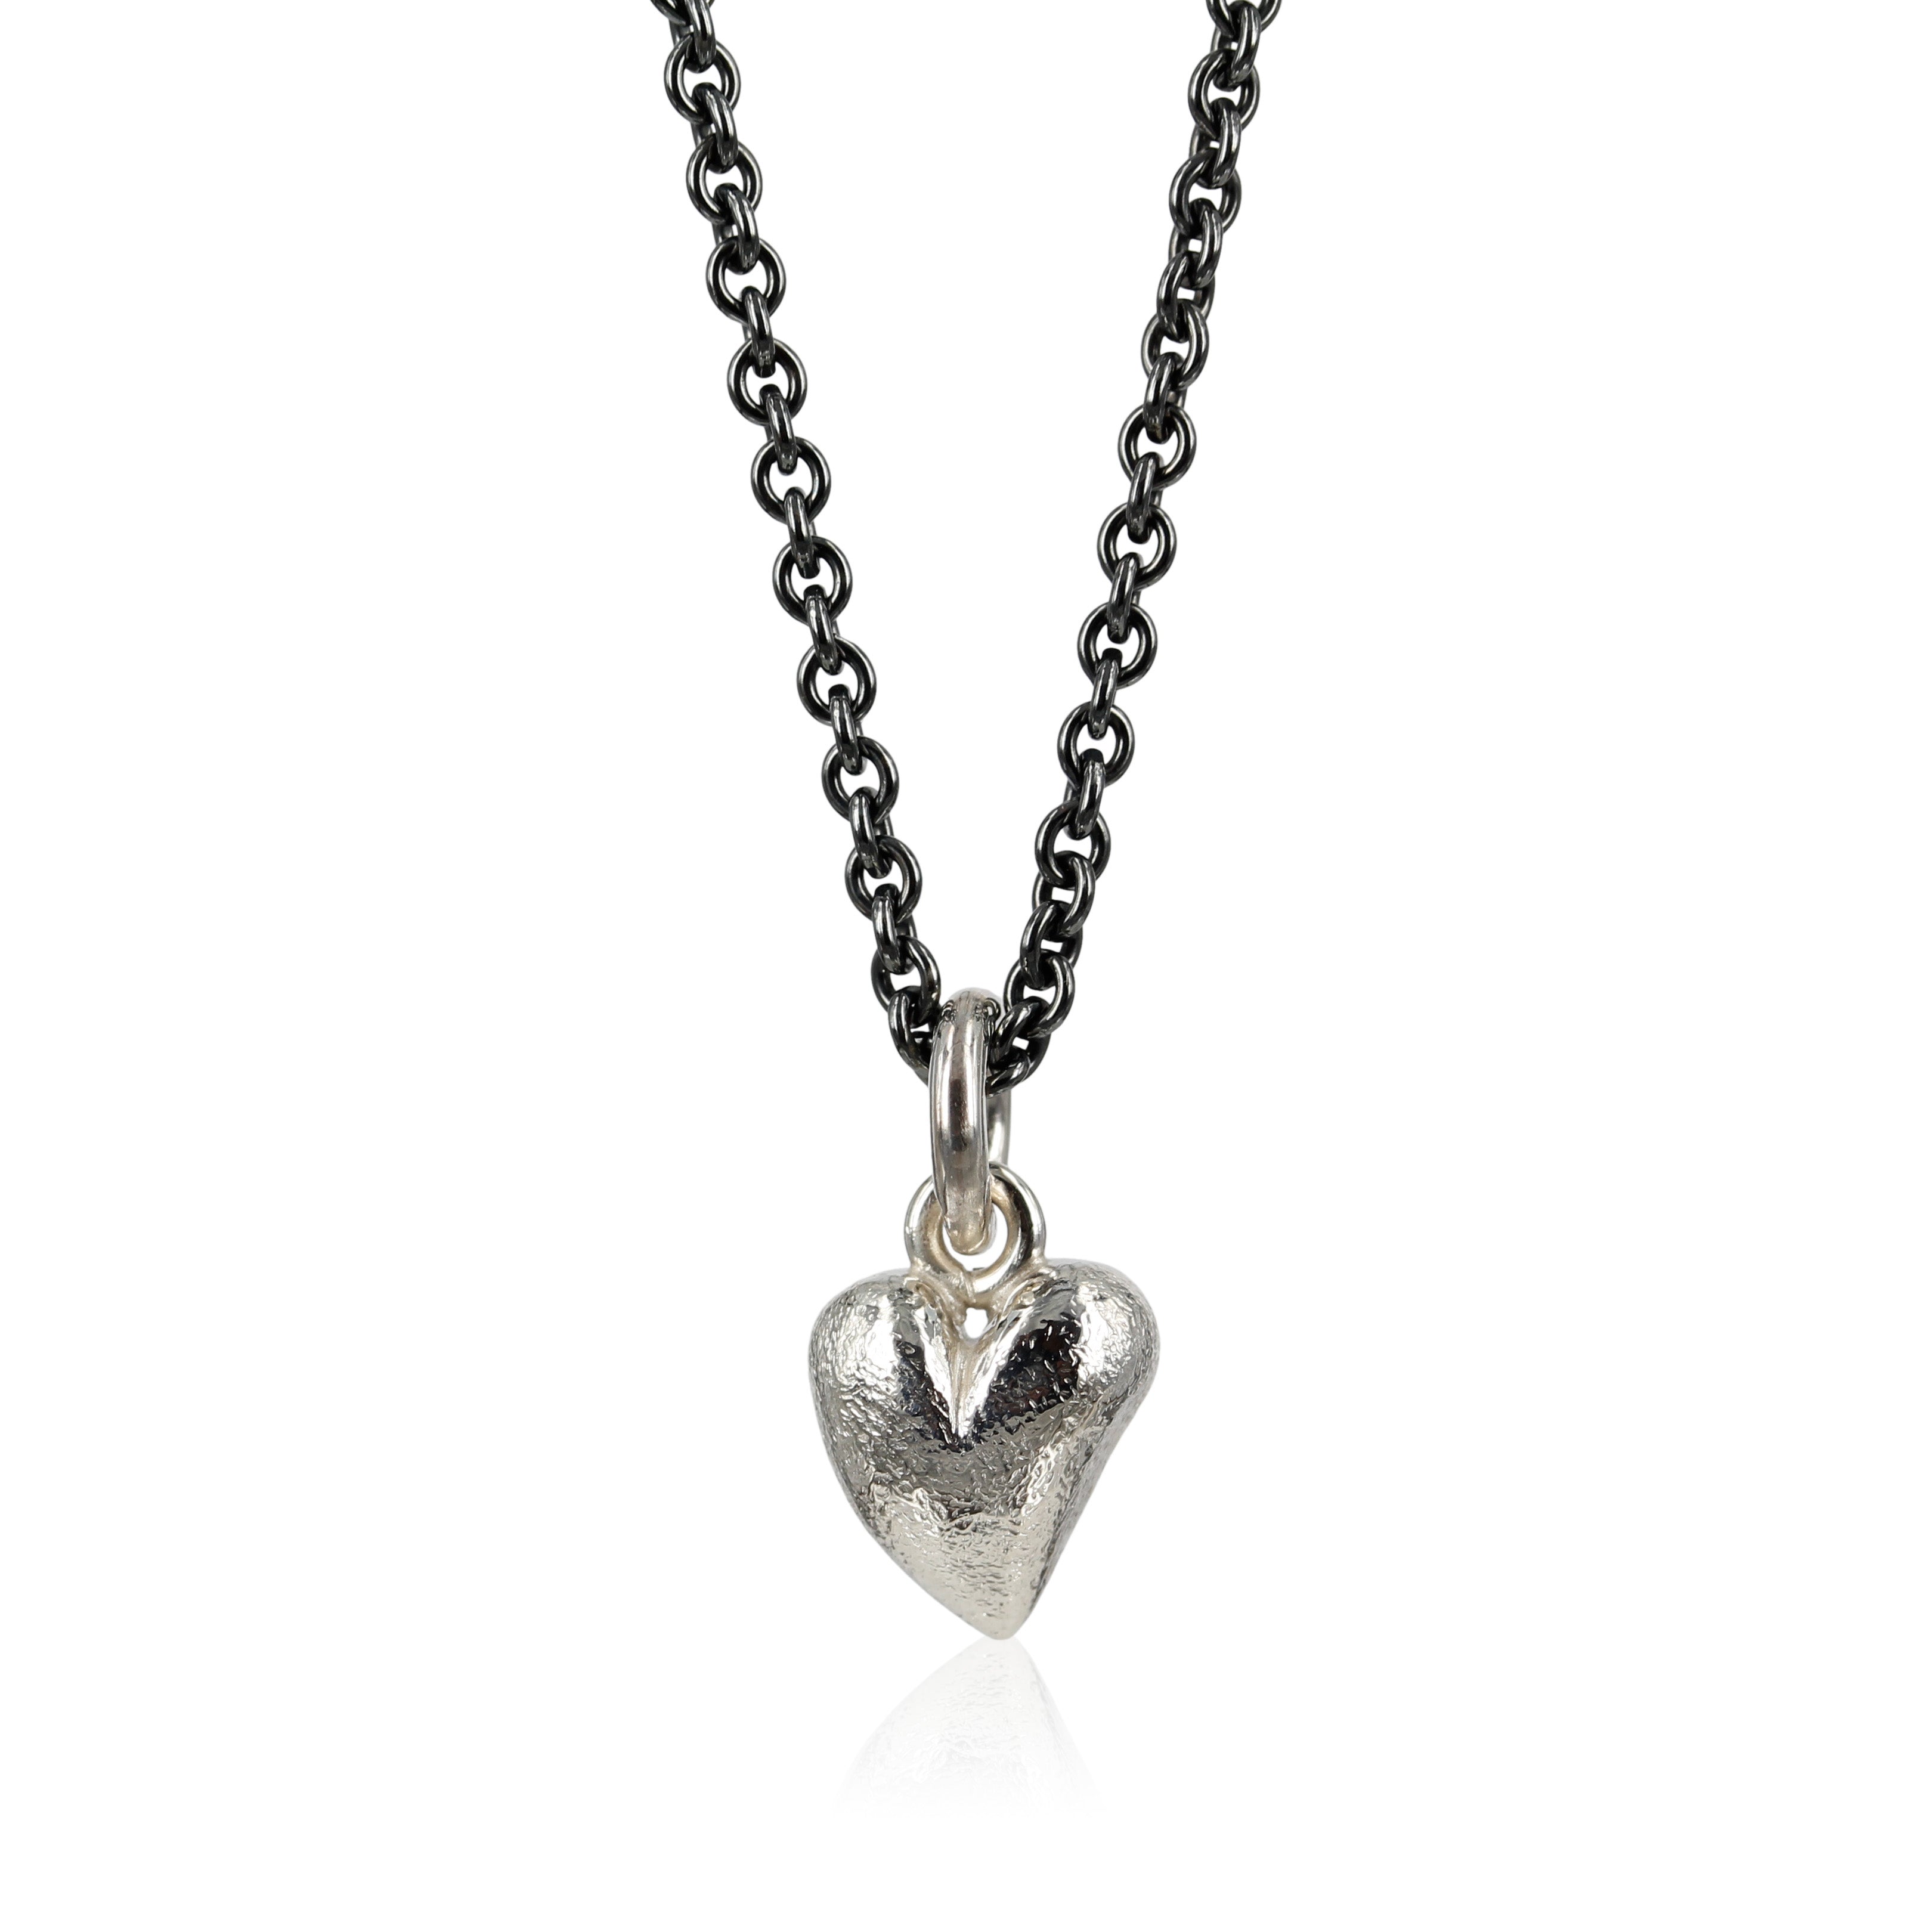 Lille fint sølv hjerte, designet med skæve buer i massiv sølv. Vedhænget er fint i en enkel kæde om halsen, eller som charm i et armbånd.  Et symbol på ægte kærlighed.  Kærlighed har ingen grænser, ingen krav, kærlighed er dyb respekt og hengivenhed.